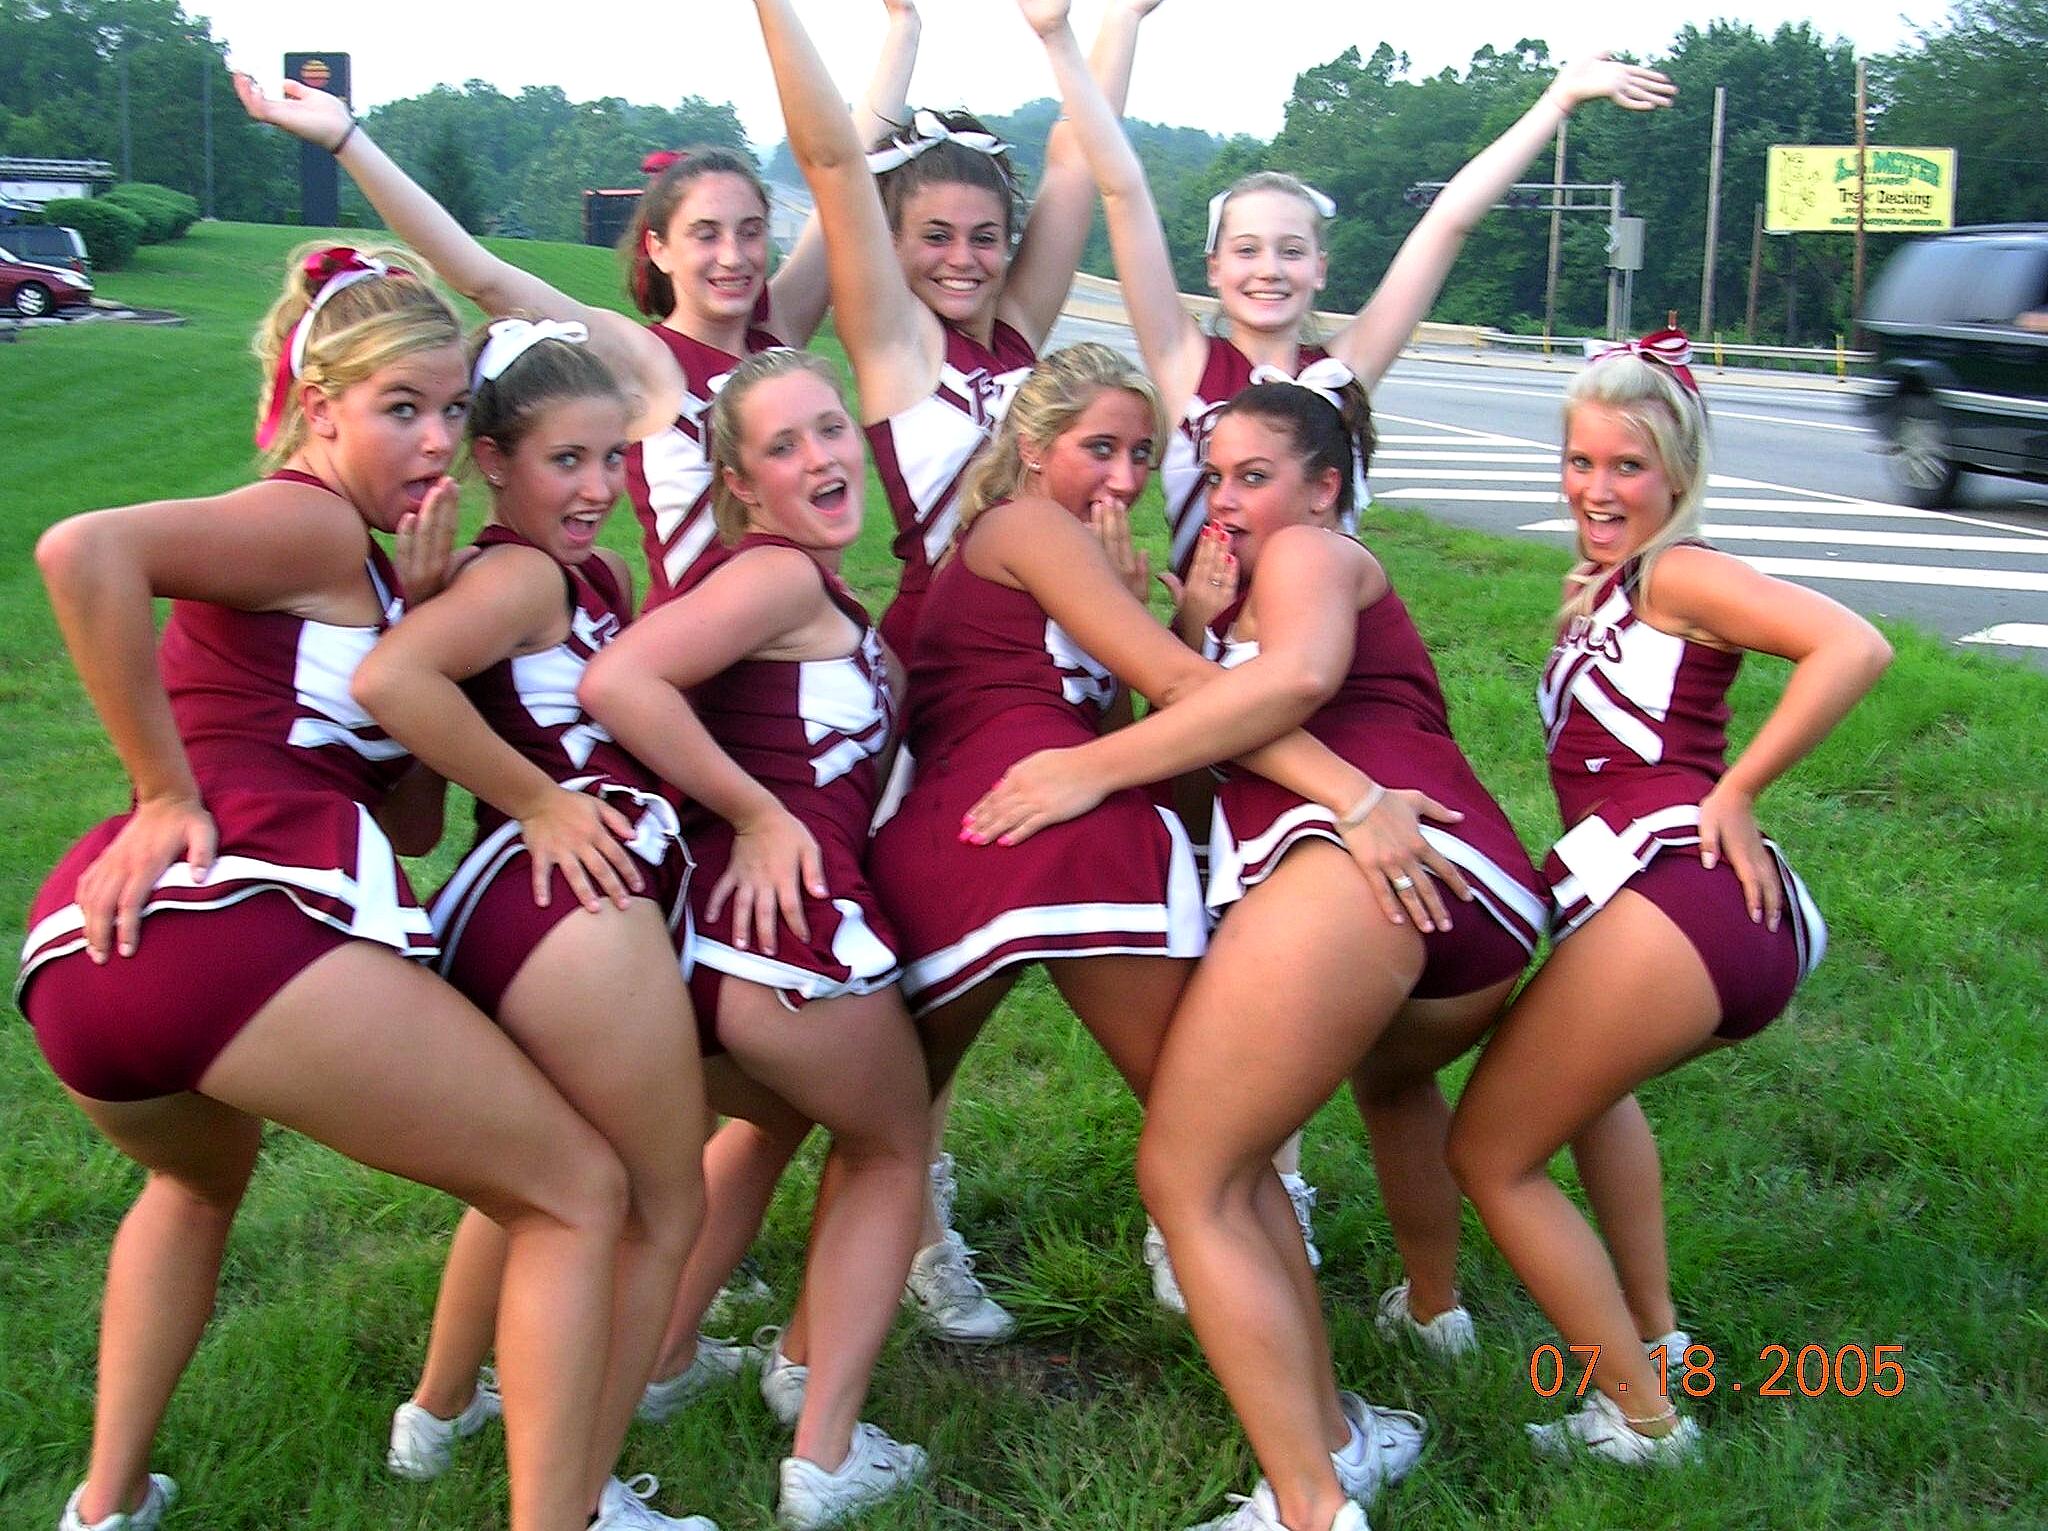 Cheerleaders upskirt pics